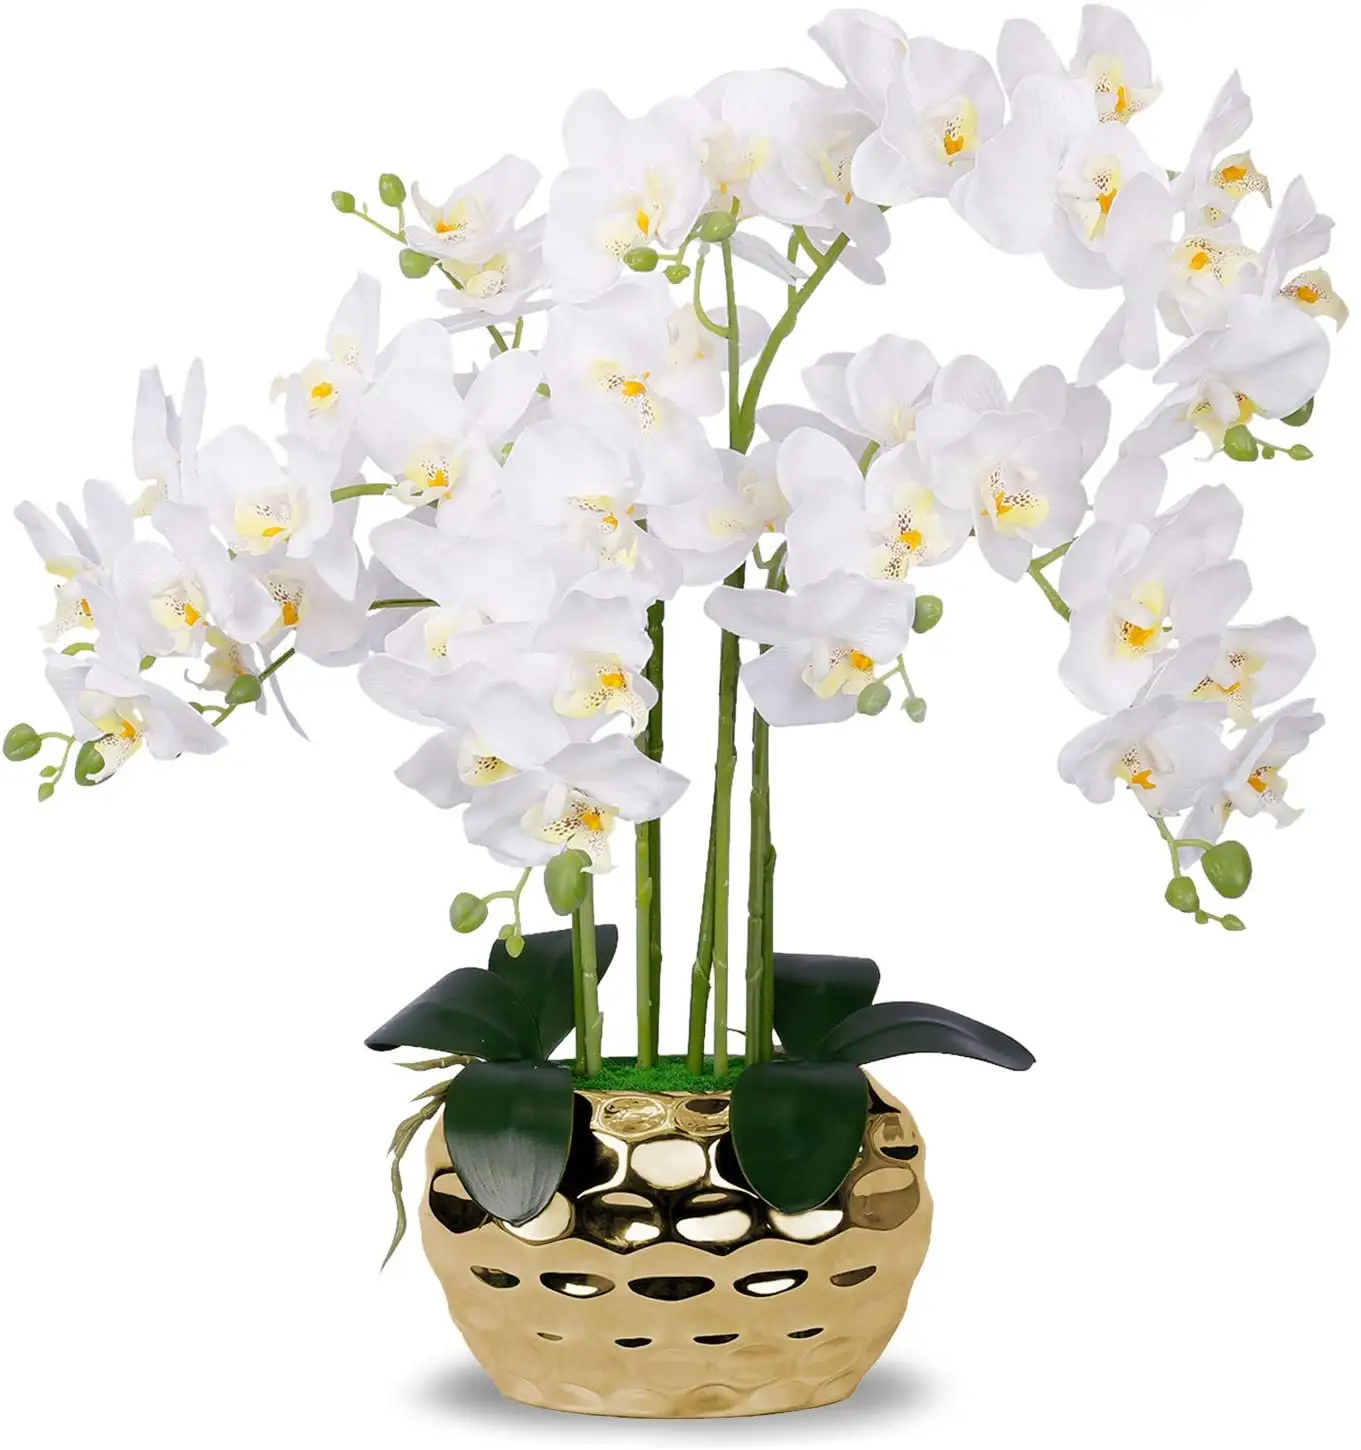 Yapay orkide altın vazo beyaz sahte orkide bitki altın saksı çiçeği aranjmanı beyaz çiçekler